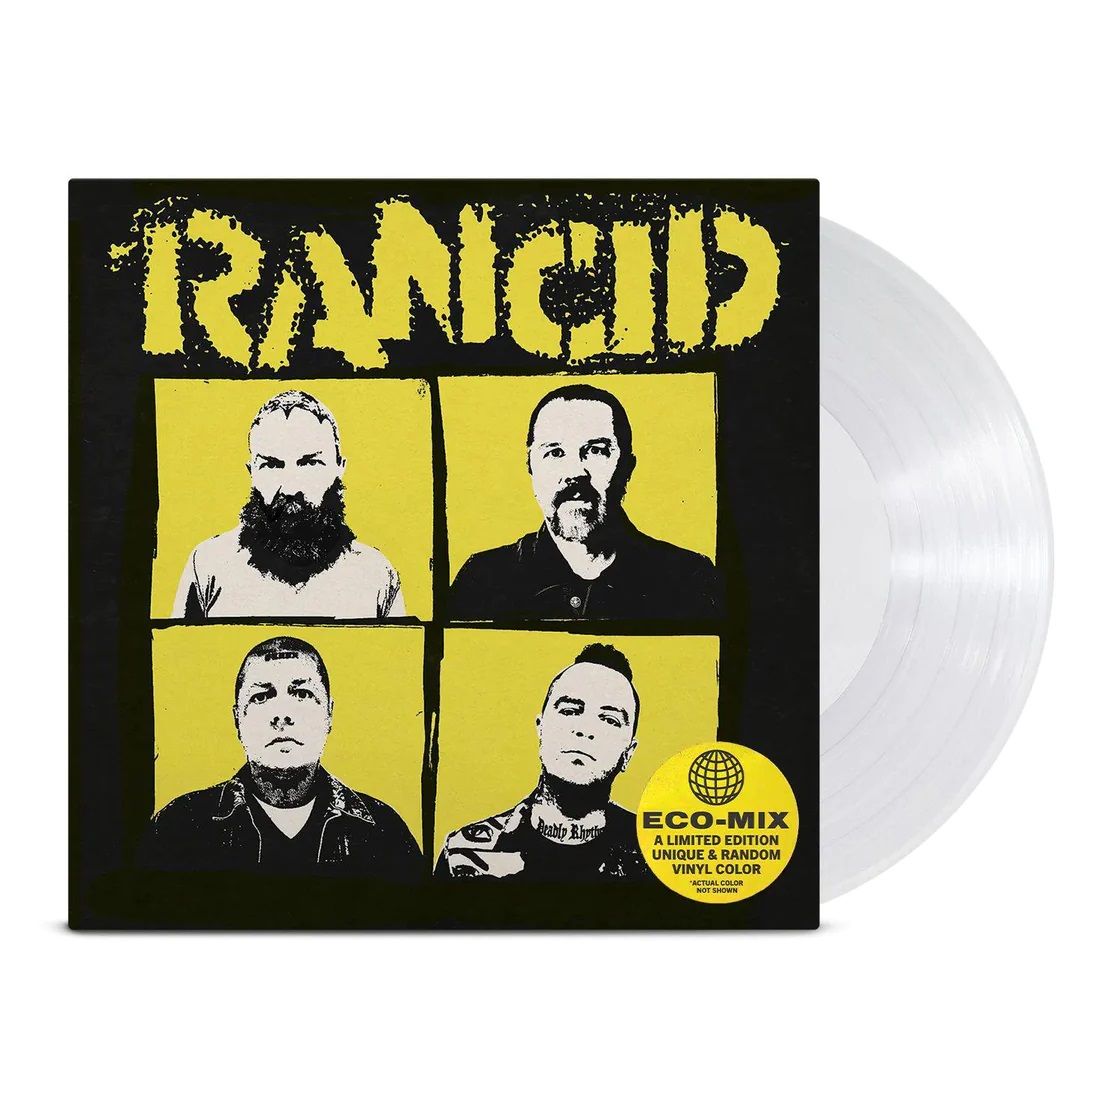 Rancid - Tomorrow Never Comes (Ltd. Ed. Eco-Mix vinyl) - Vinyl - New